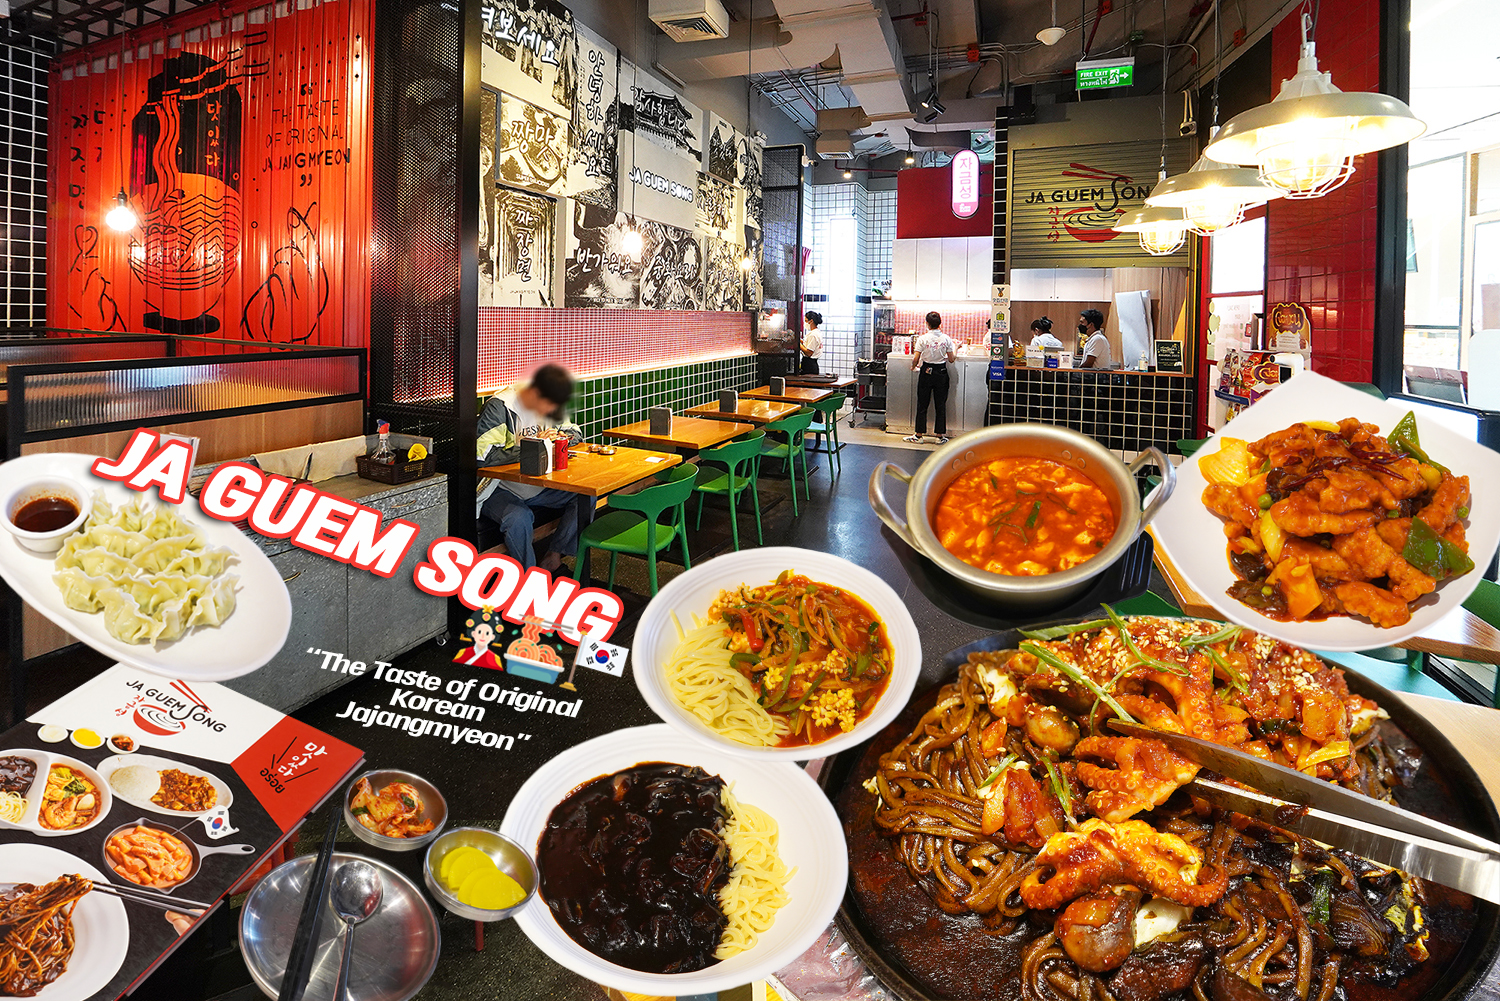 กินอาหารเกาหลี จาจังมยอน รสชาติดั้งเดิมของวัฒนธรรมเกาหลี “The Taste of original Korea Jajangmyeon” ที่ร้านจากึมซอง (Jaguemsong) สยามสแควร์วัน